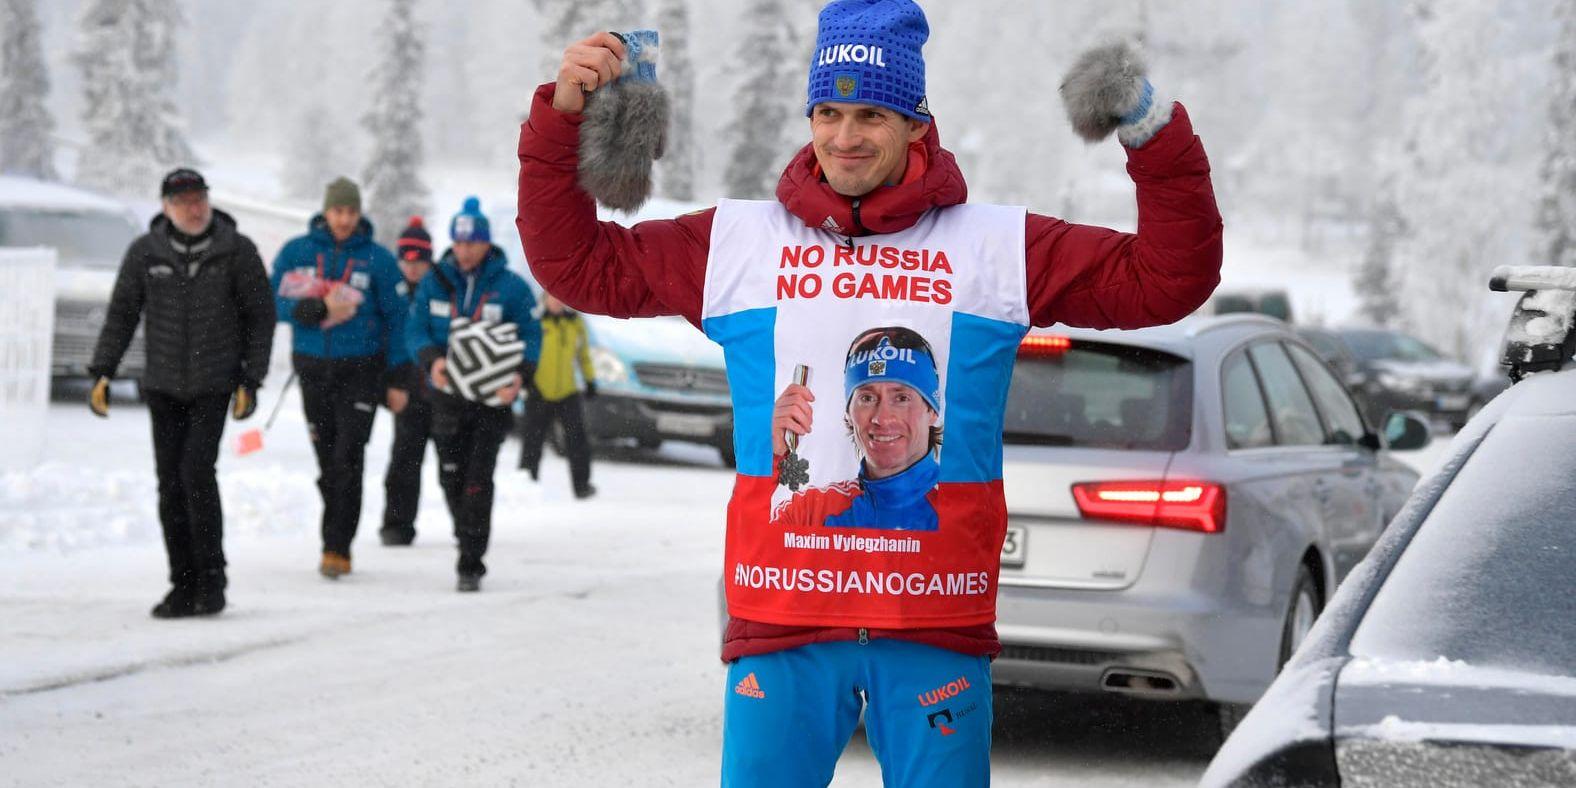 I samband med torsdagens träning inför fredagen världscupspremiär bar flera medarbetare ur den ryska skidtruppen en väst med ett budskap kring de avstängda ryska åkarna till kommande vinter-OS i Pyeongchang.